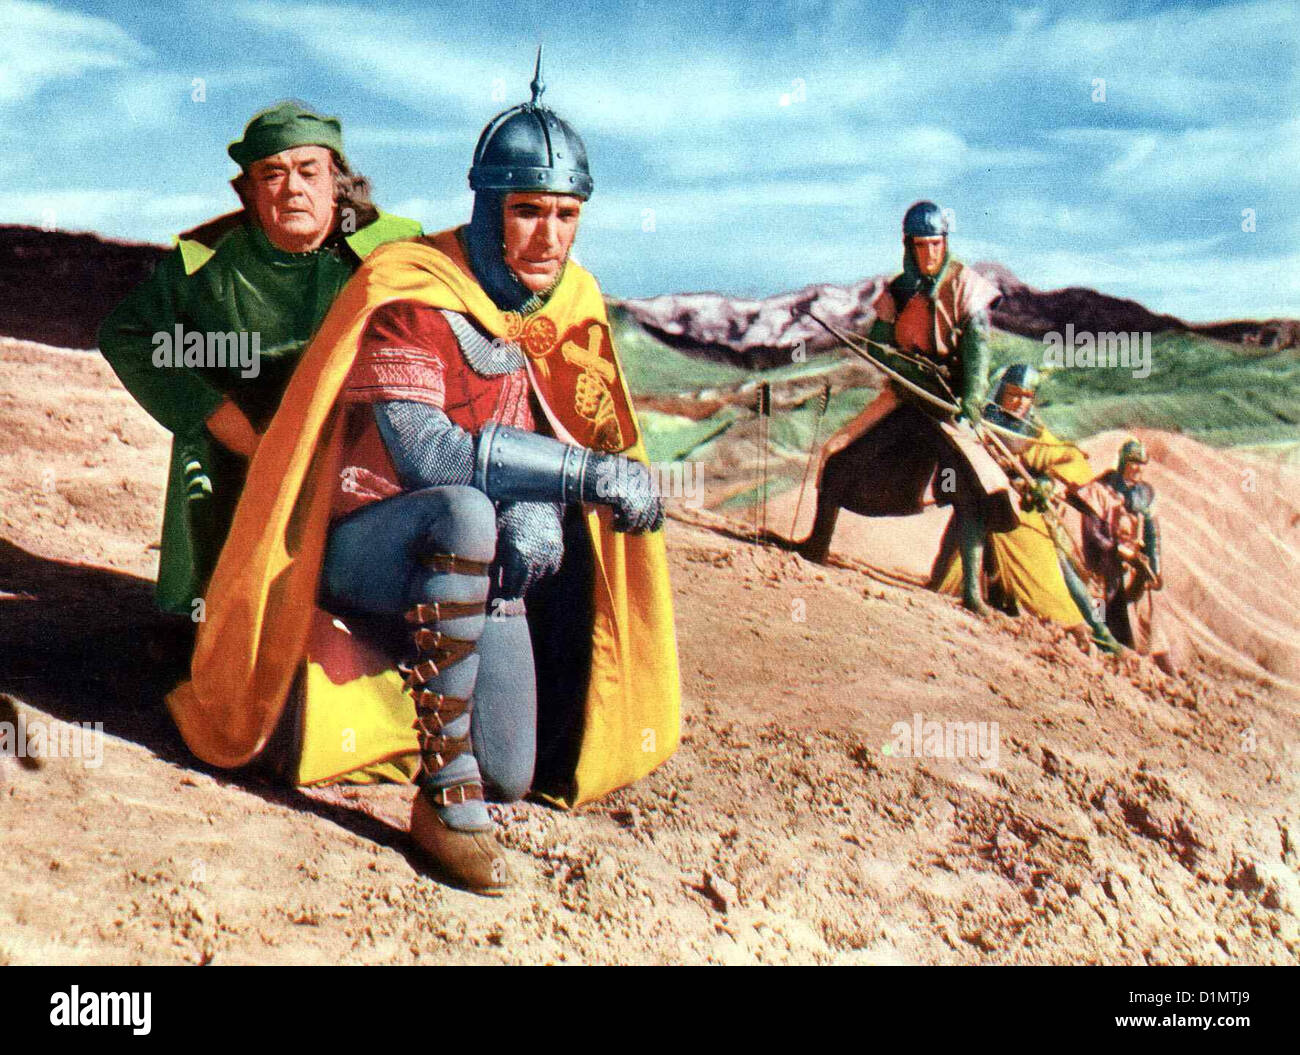 Dschingis Khan - Die Goldene Horde   Golden Horde, The   David Farrar (2vl) *** Local Caption *** 1951  -- Stock Photo